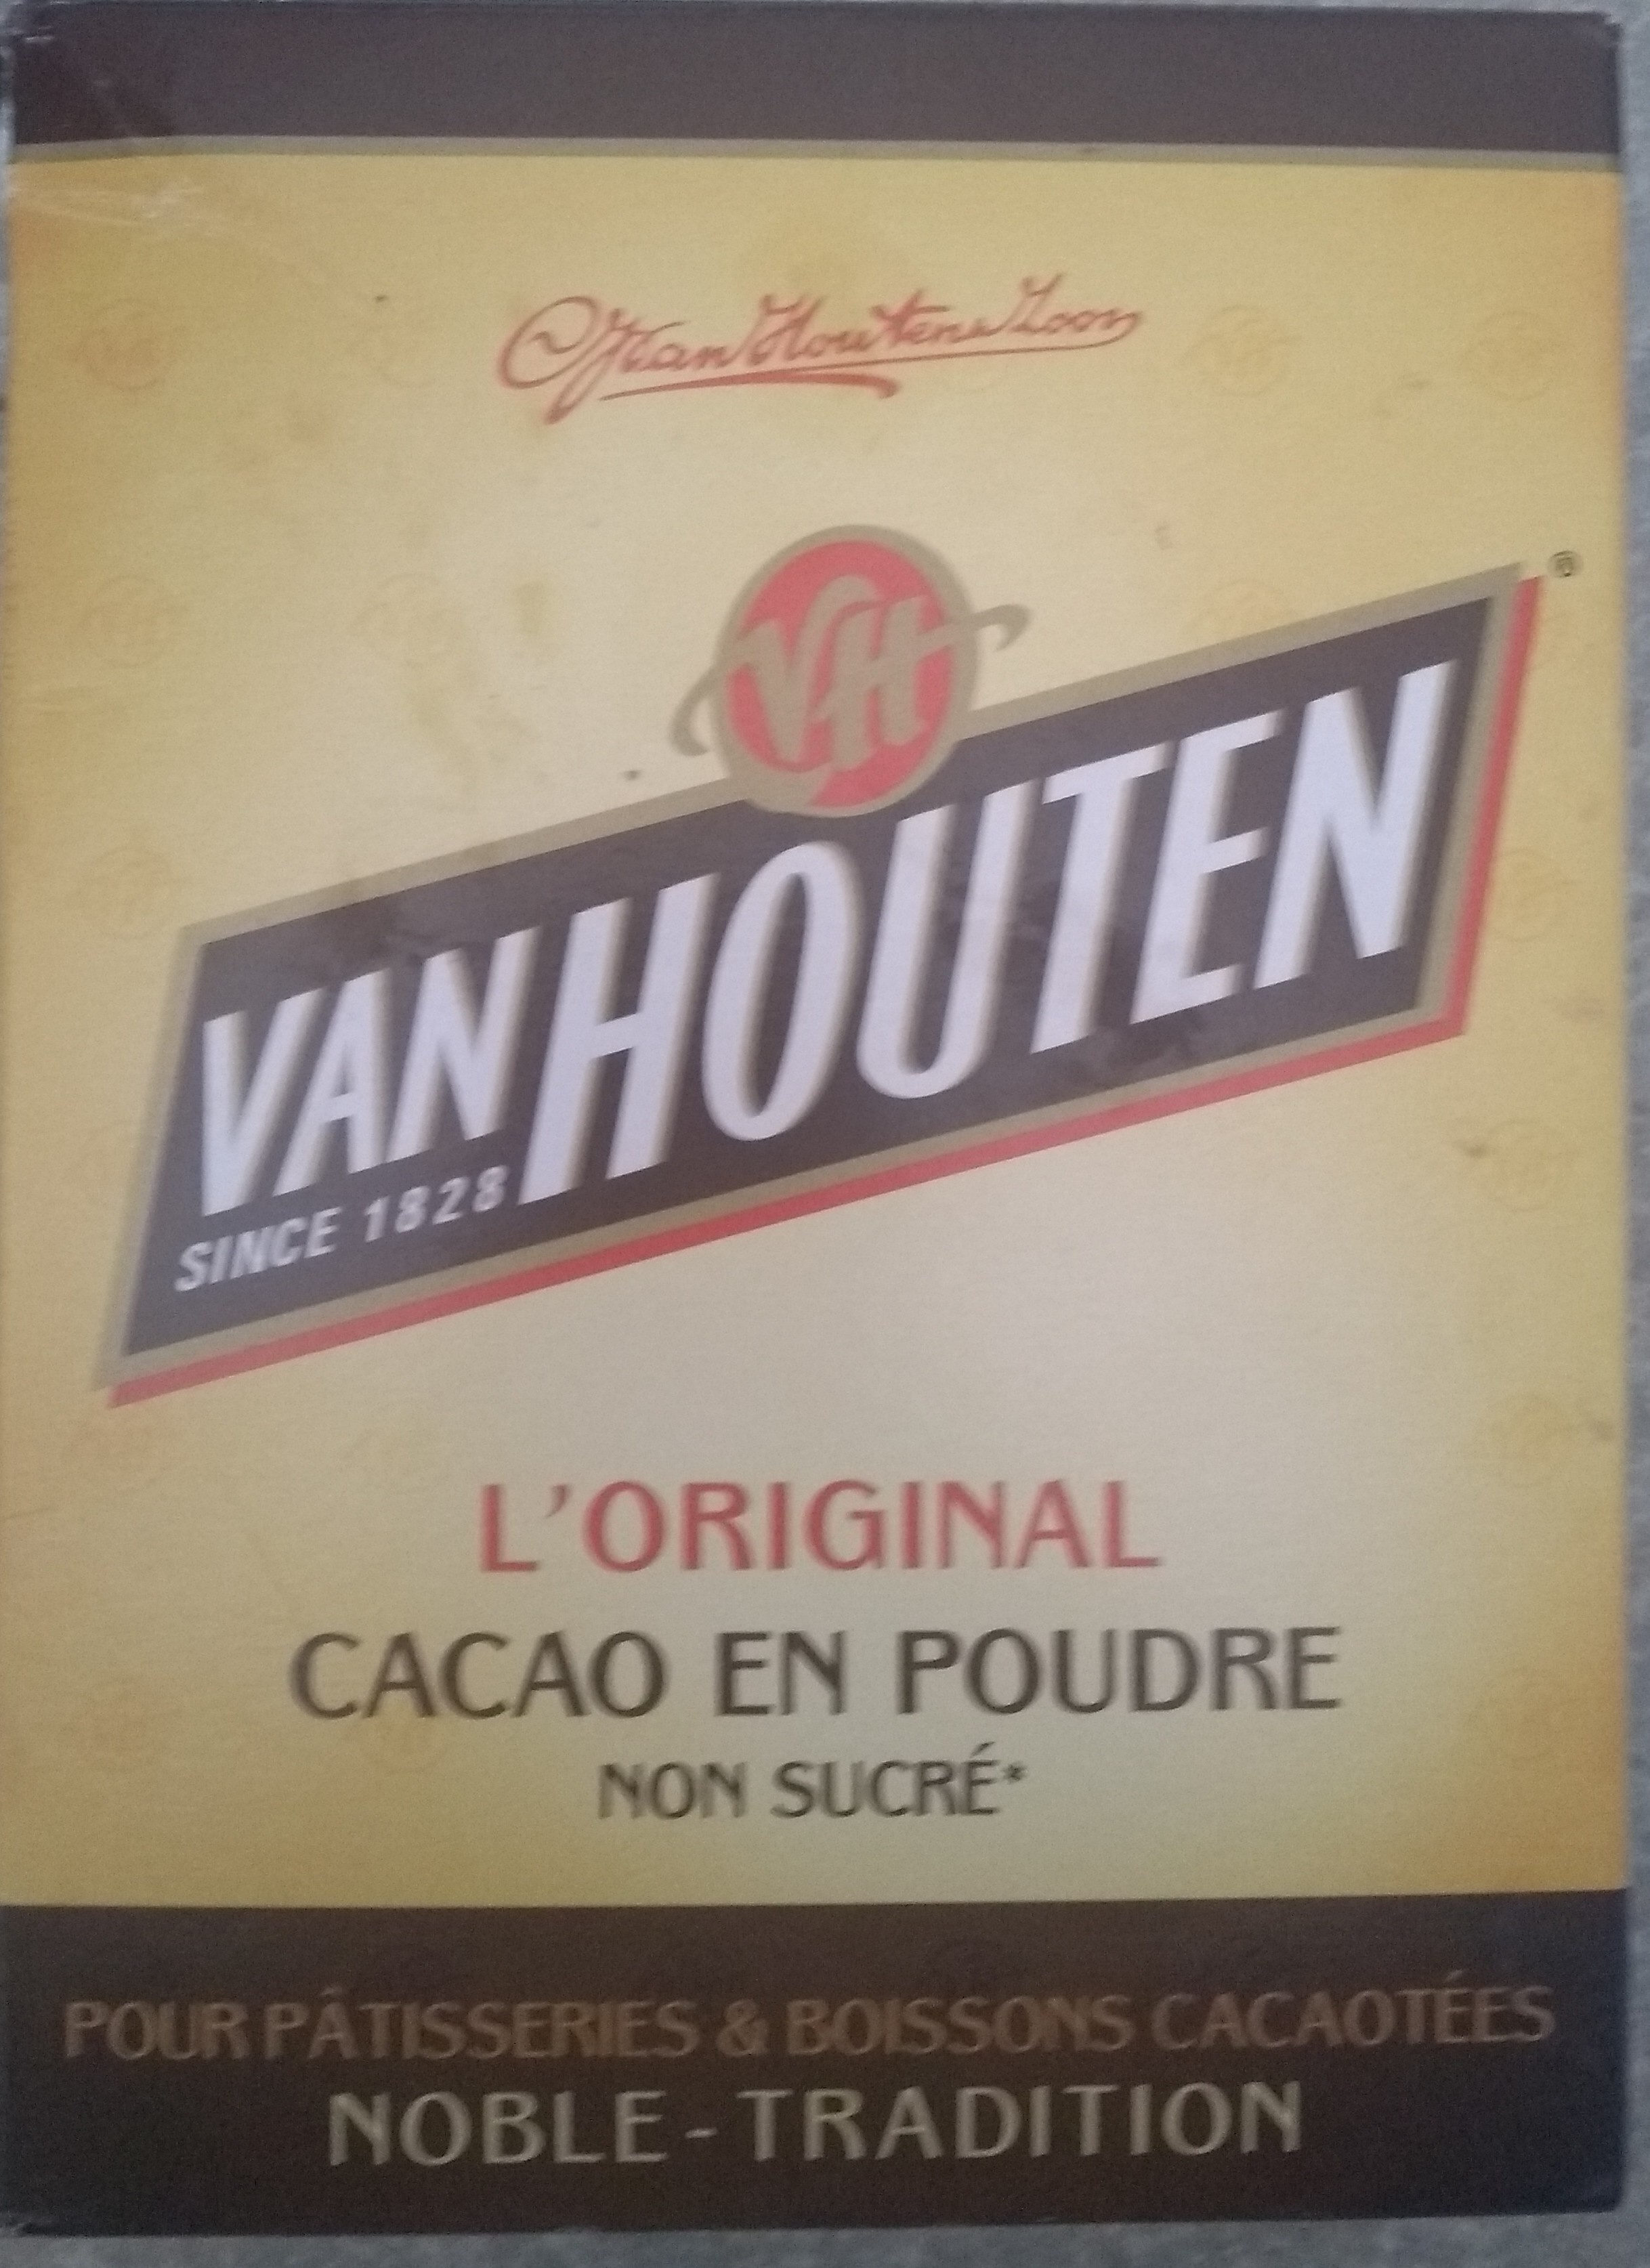 l'original cacao en poudre non sucré - Product - fr